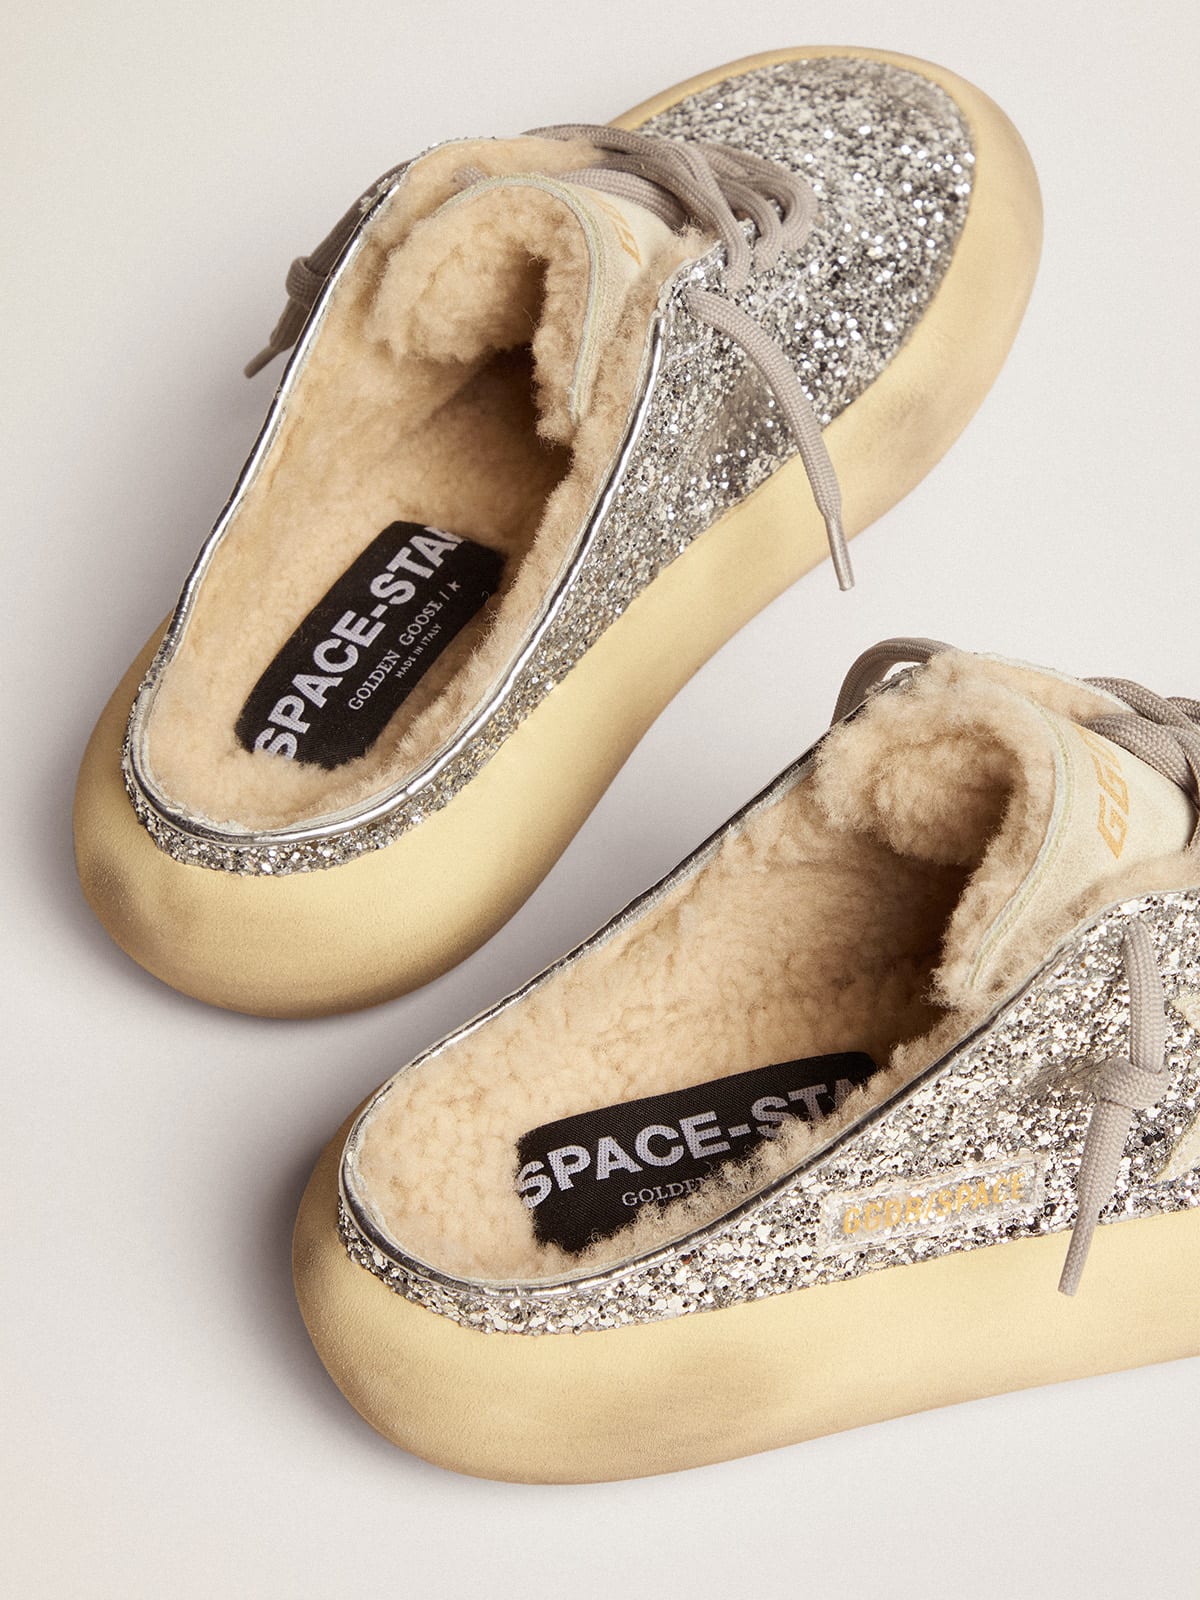 Golden Goose - Chaussures Space-Star mules à paillettes argentées avec doublure en shearling in 